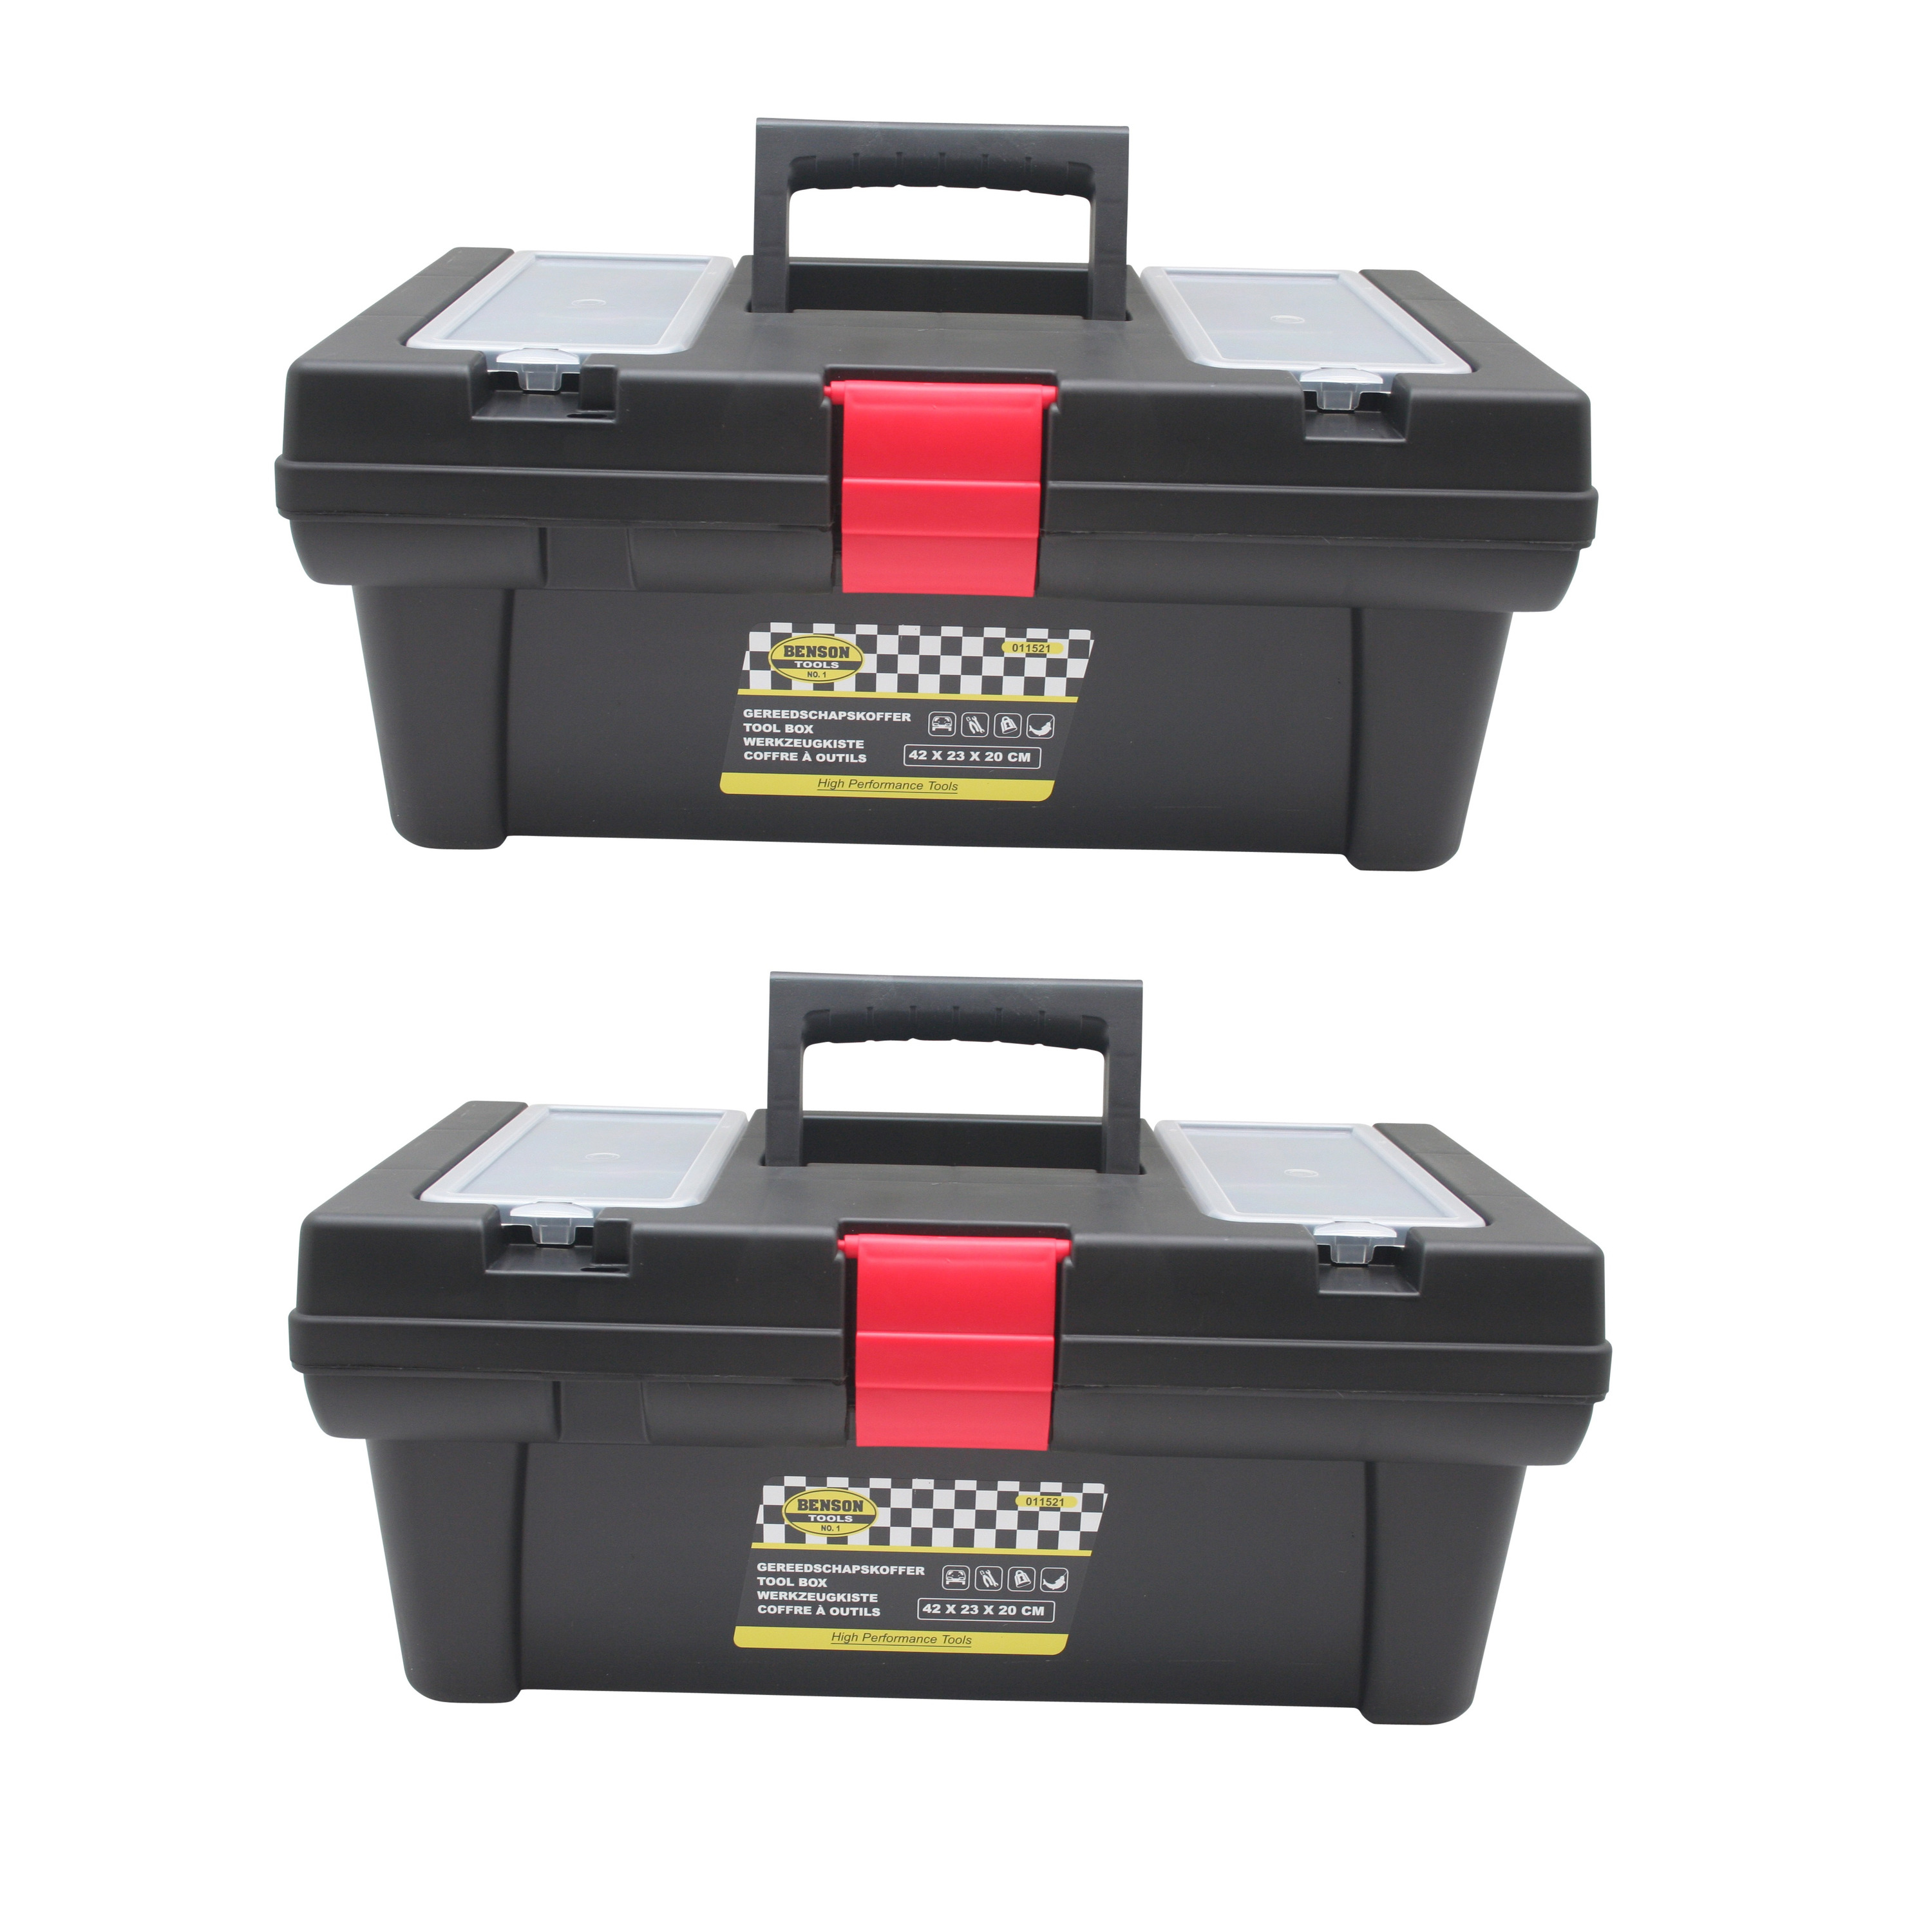 2x stuks gereedschapskisten-koffers met bakjes 42 x 23 x 18 cm